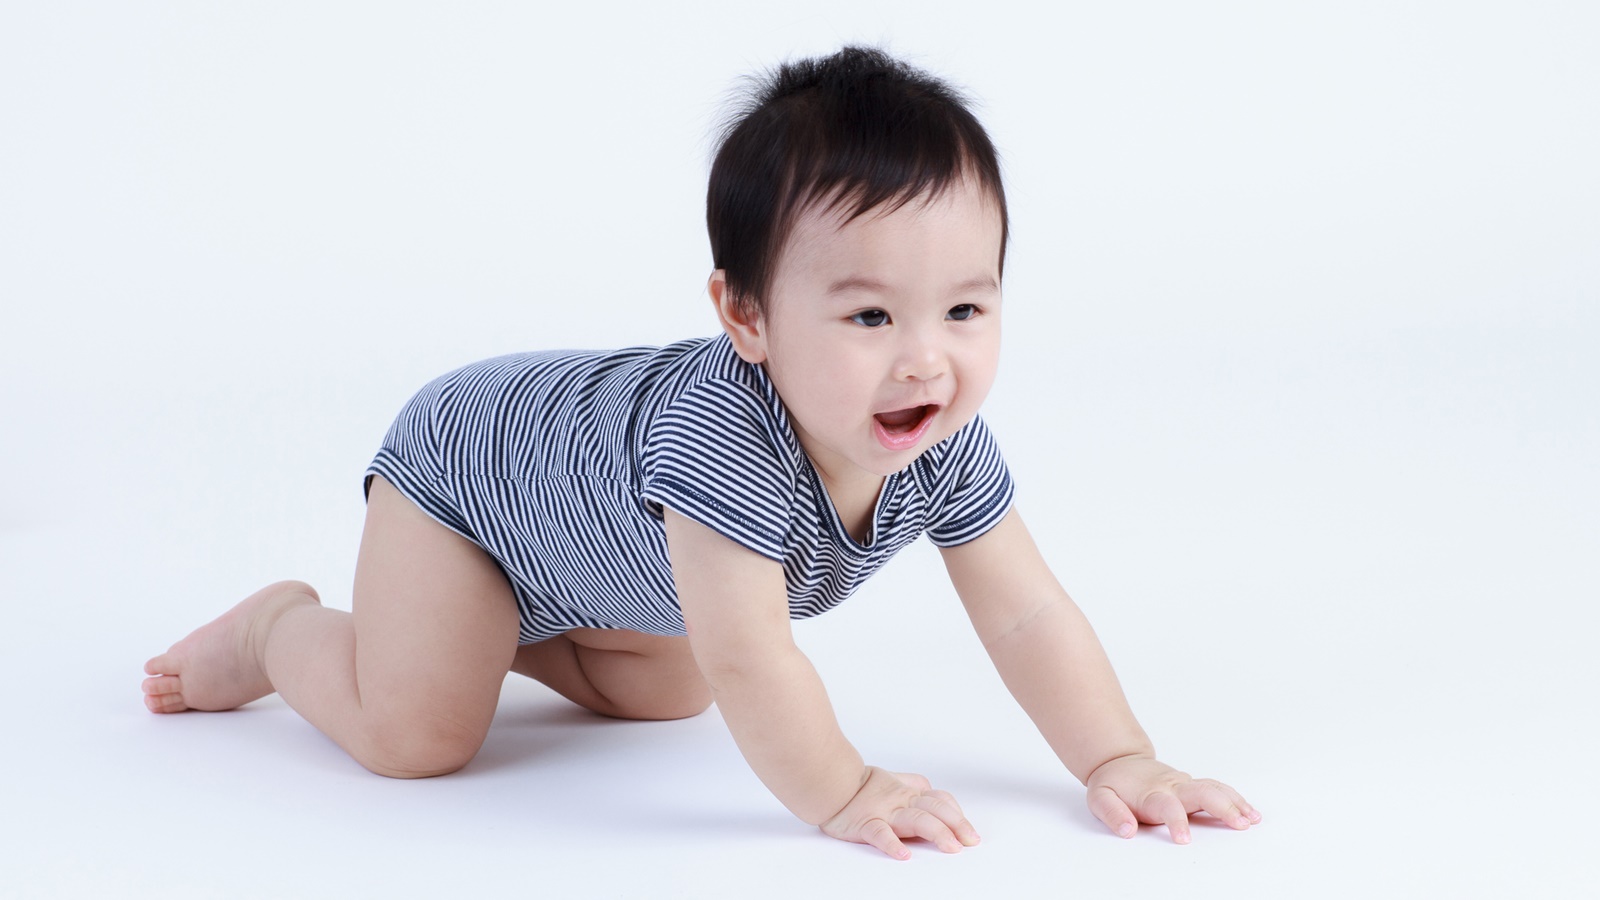 Riset: Merangkak Bisa Meningkatkan Konsentrasi Bayi 